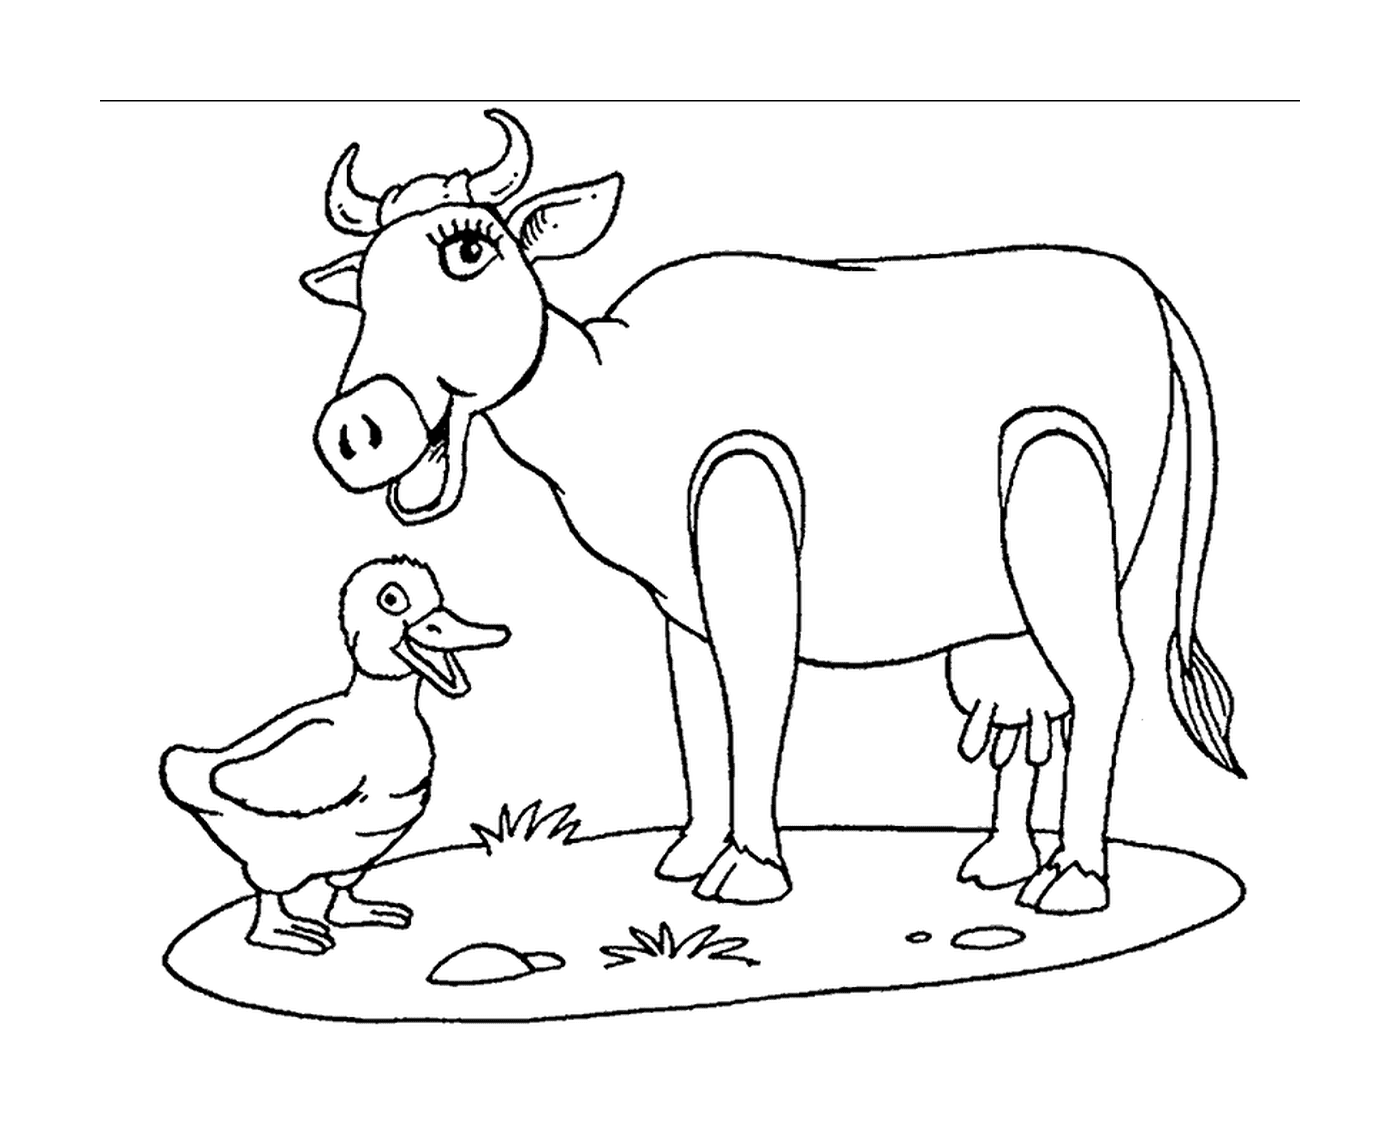   Une vache accompagnée d'un canard 